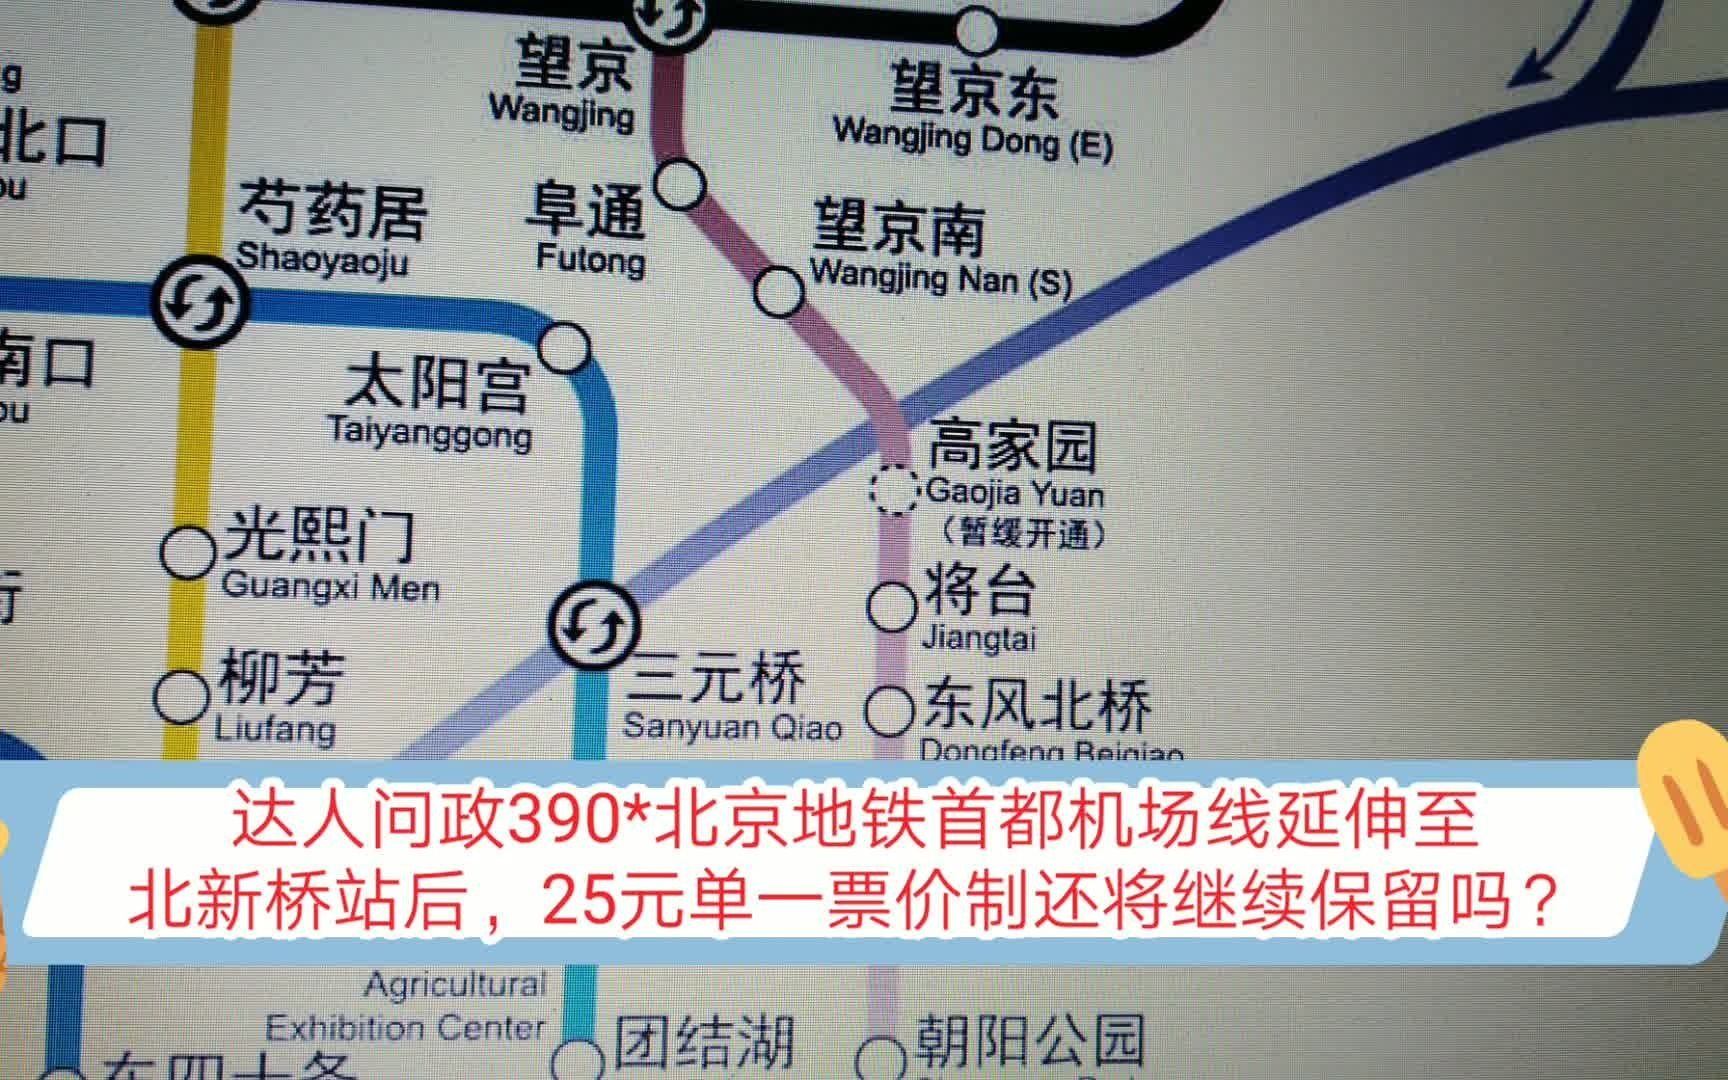 达人问政北京地铁首都机场线延伸至北新桥站后25元单一票价制还将继续